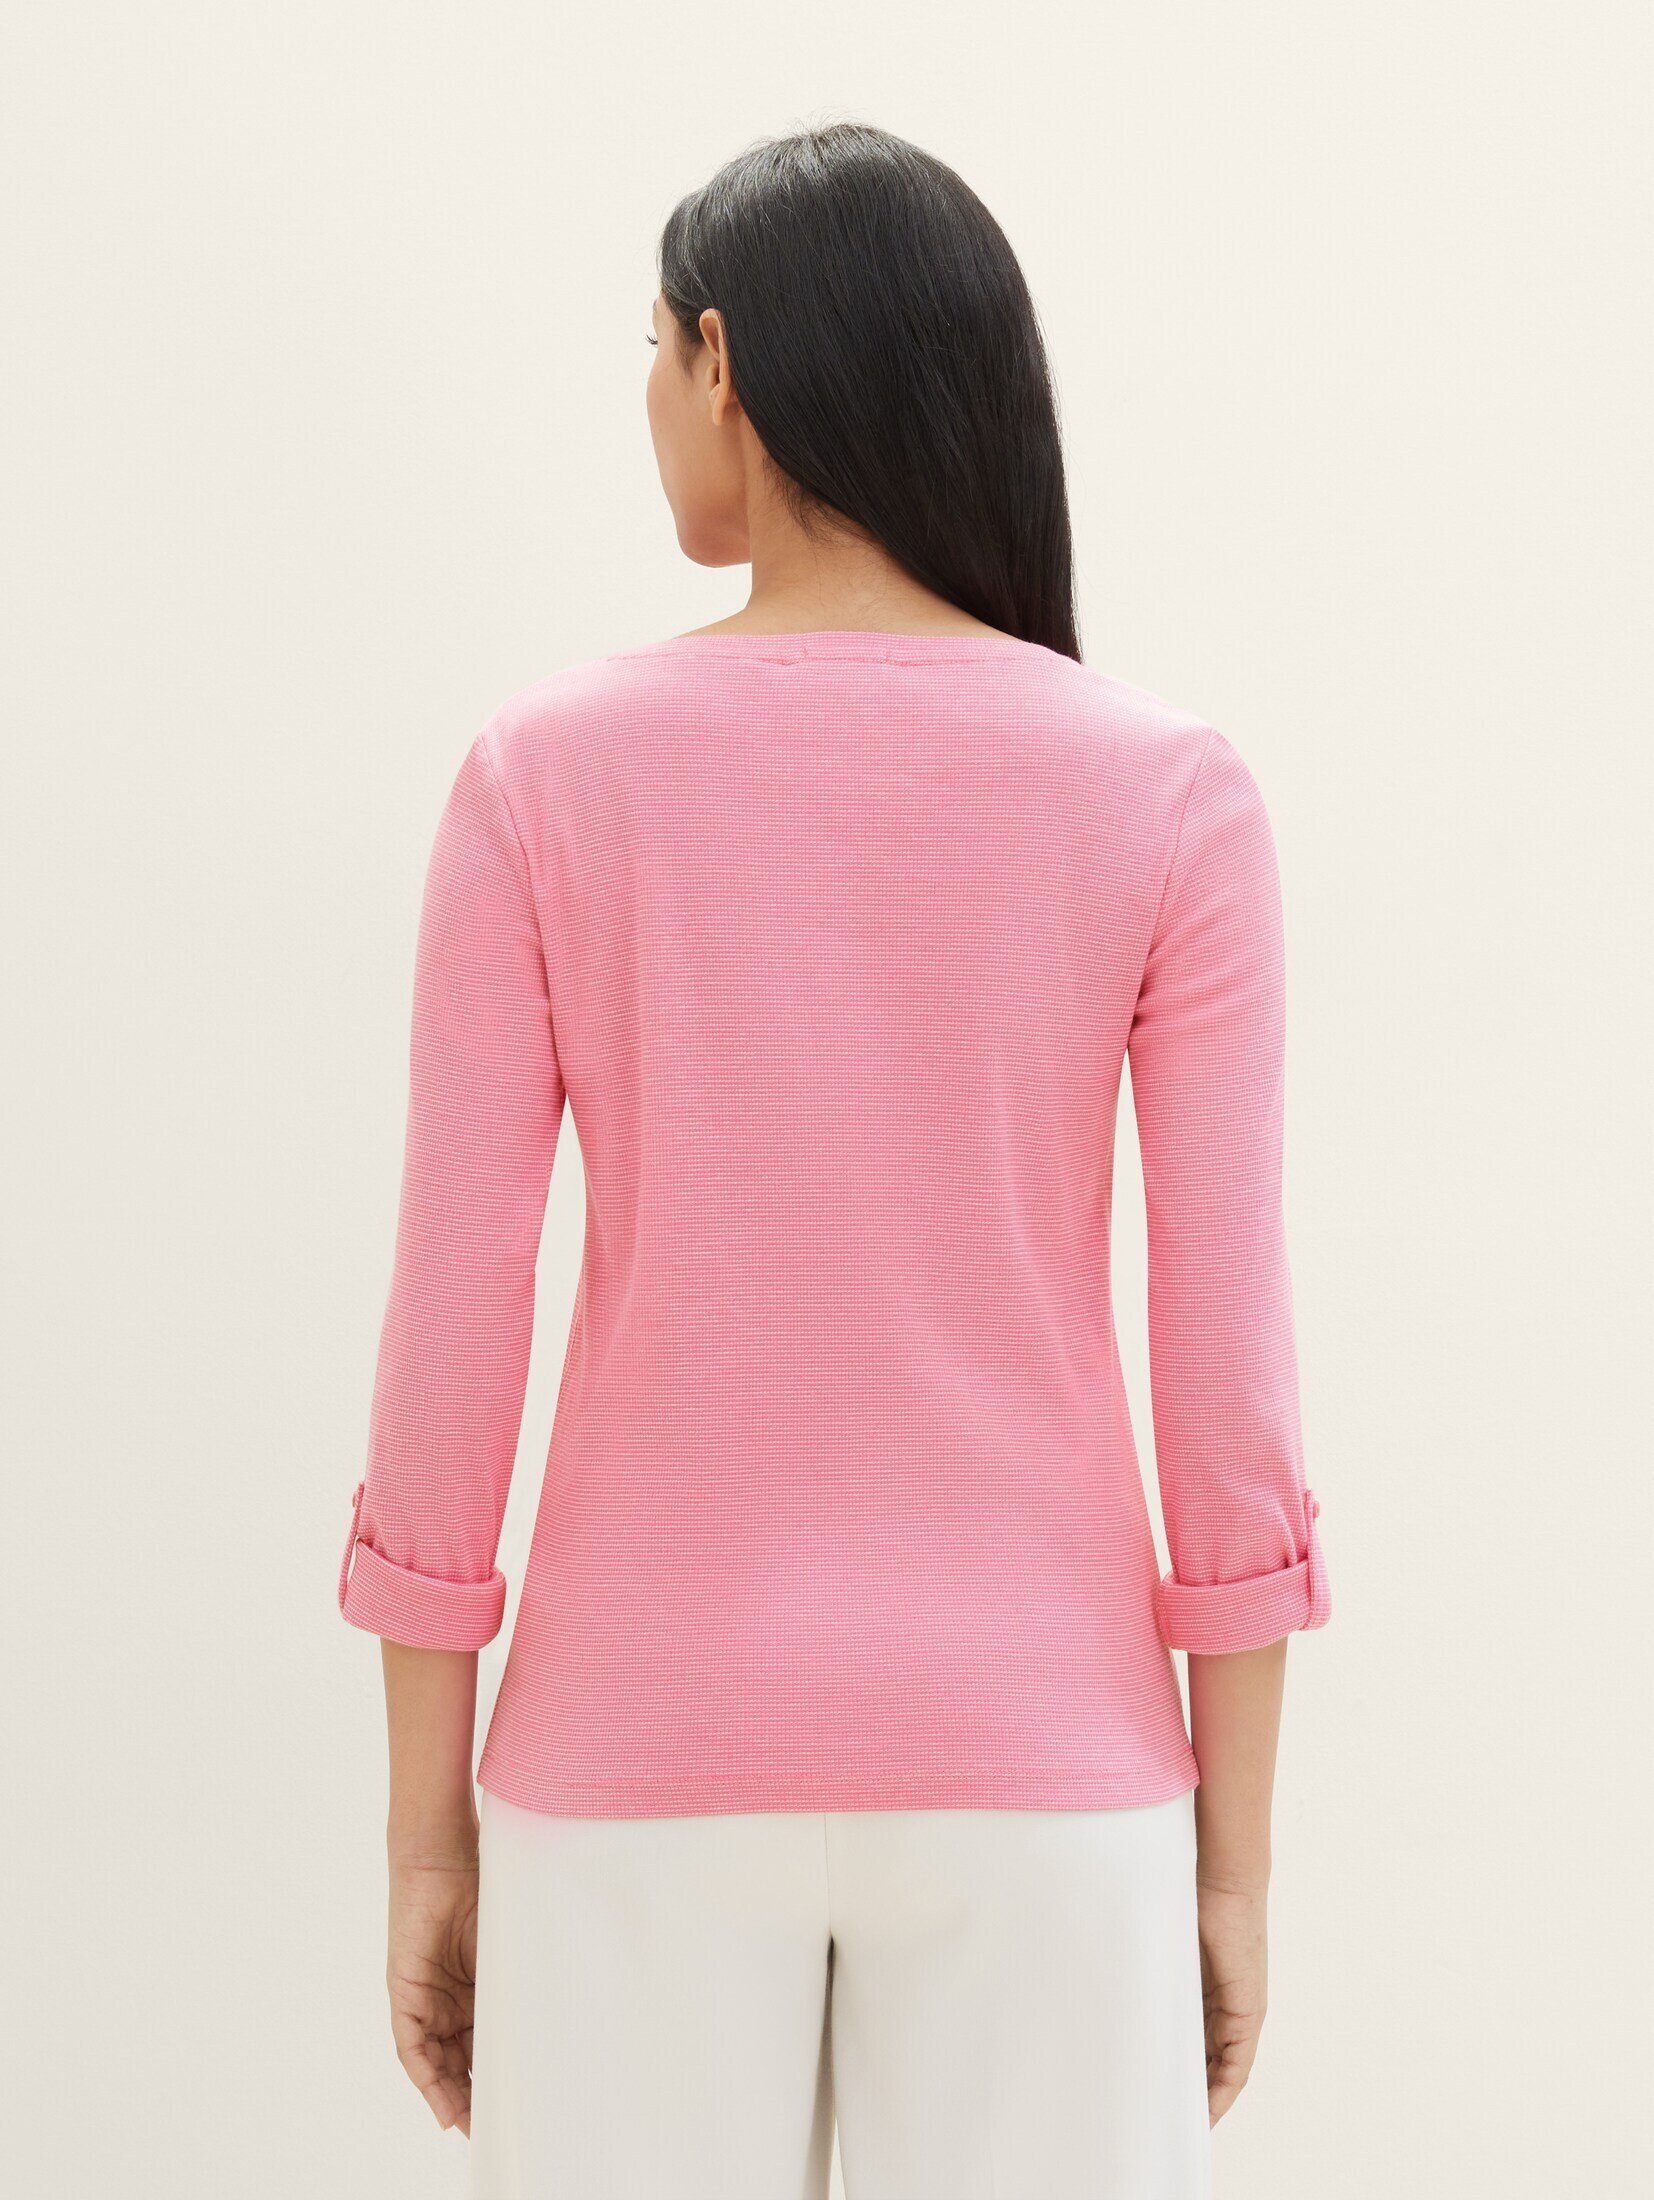 TAILOR Langarmshirt mit T-Shirt TOM stripe ck Bio-Baumwolle pink offwhite